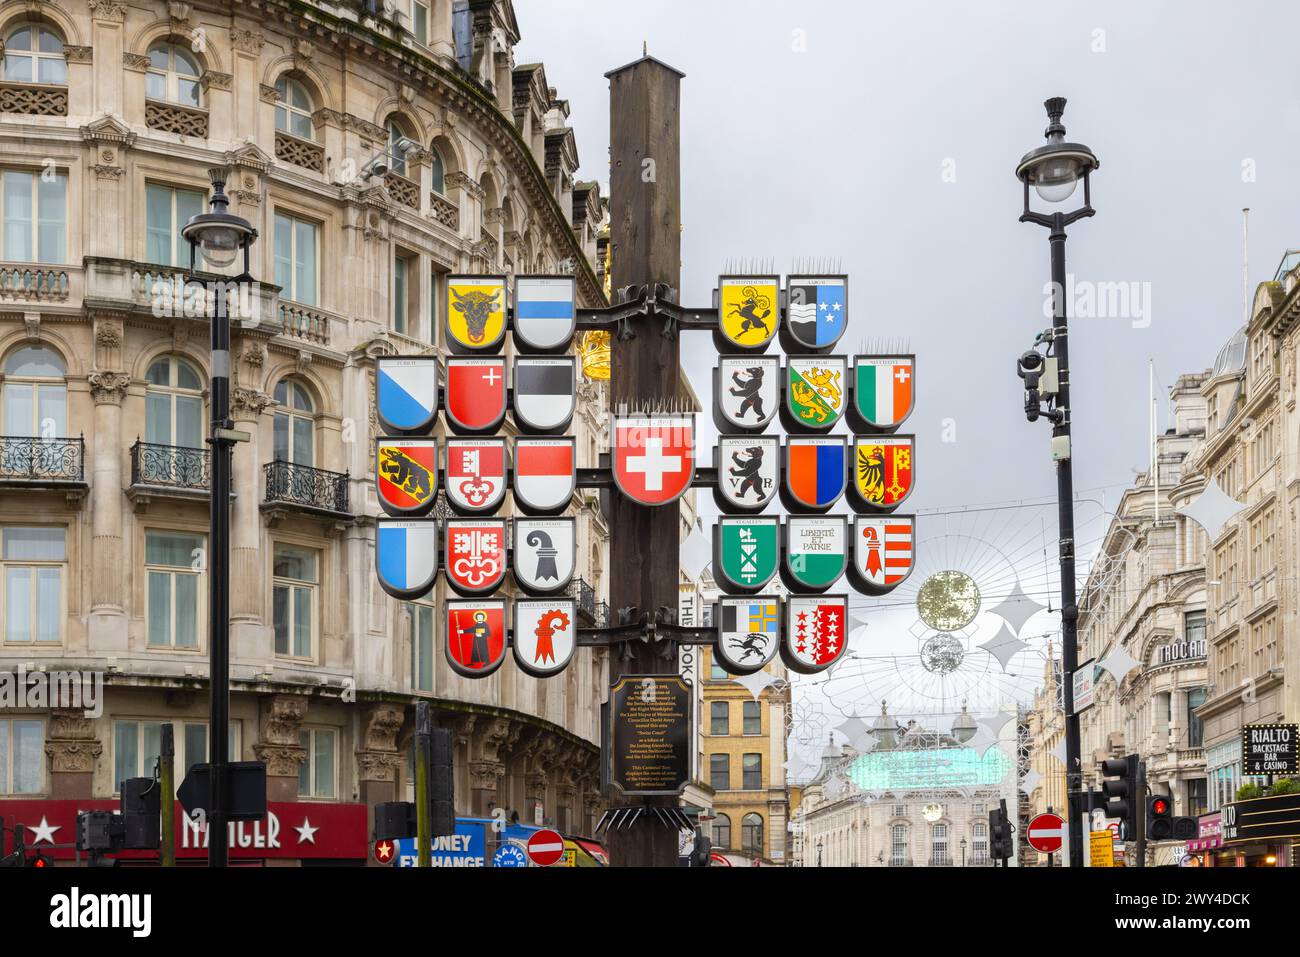 The Cantonal Tree in Swiss Court vicino a Leicester Square, Londra. L'albero mostra lo stemma dei 26 cantoni o distretti della Svizzera. Foto Stock